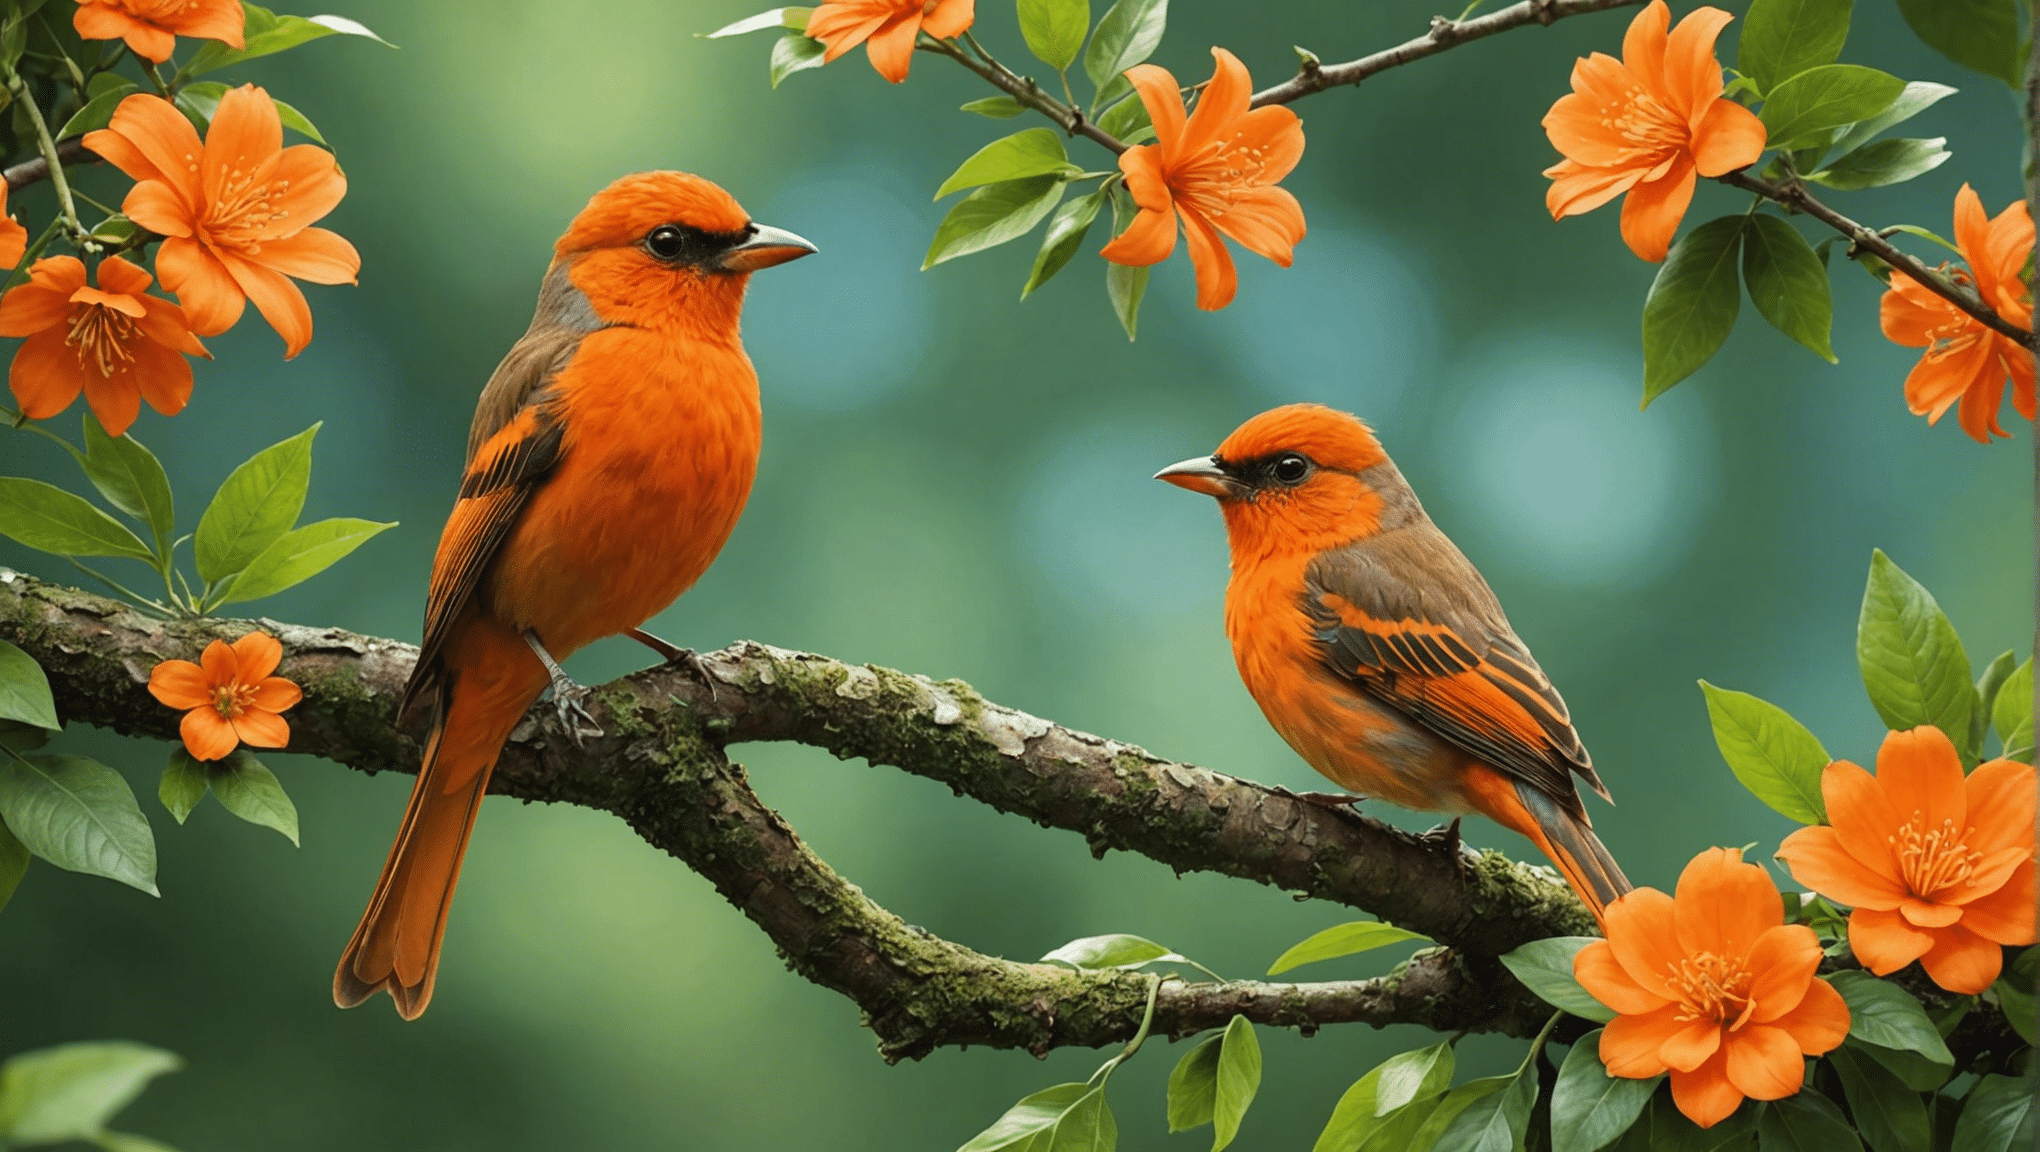 descubre la verdad sobre los pájaros naranjas: ¿son reales o sólo un mito? Conozca los hechos y descubra la realidad detrás del misterio del pájaro naranja.